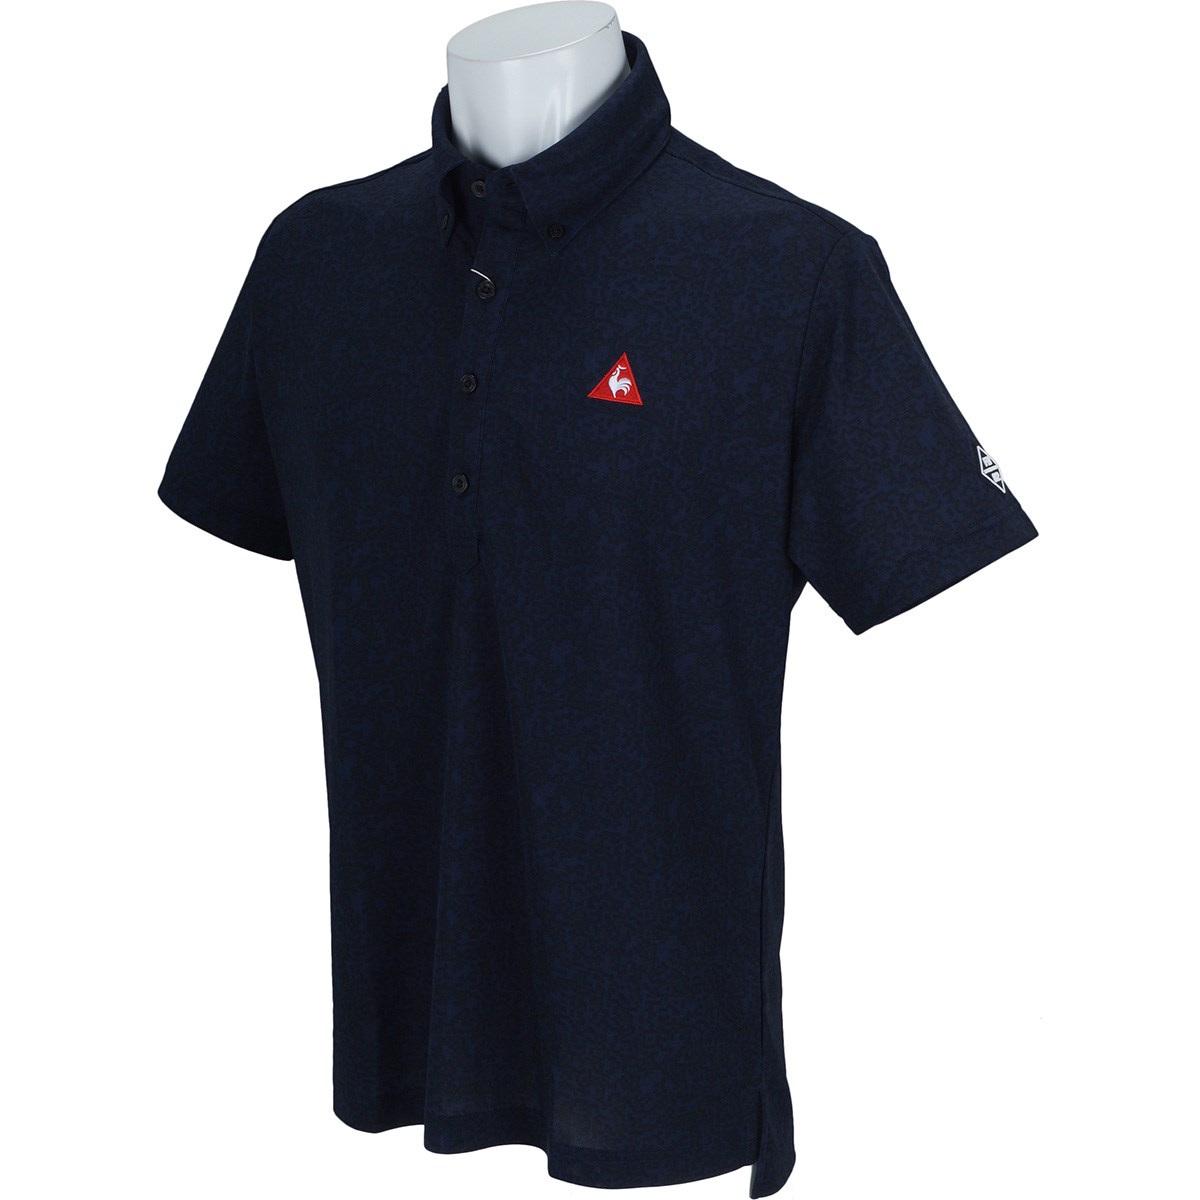 「ルコックゴルフ 8Bitカモフラージュプリント 半袖ポロシャツ 」（ポロシャツ・シャツ）- ゴルフ(GOLF)用品のネット通販